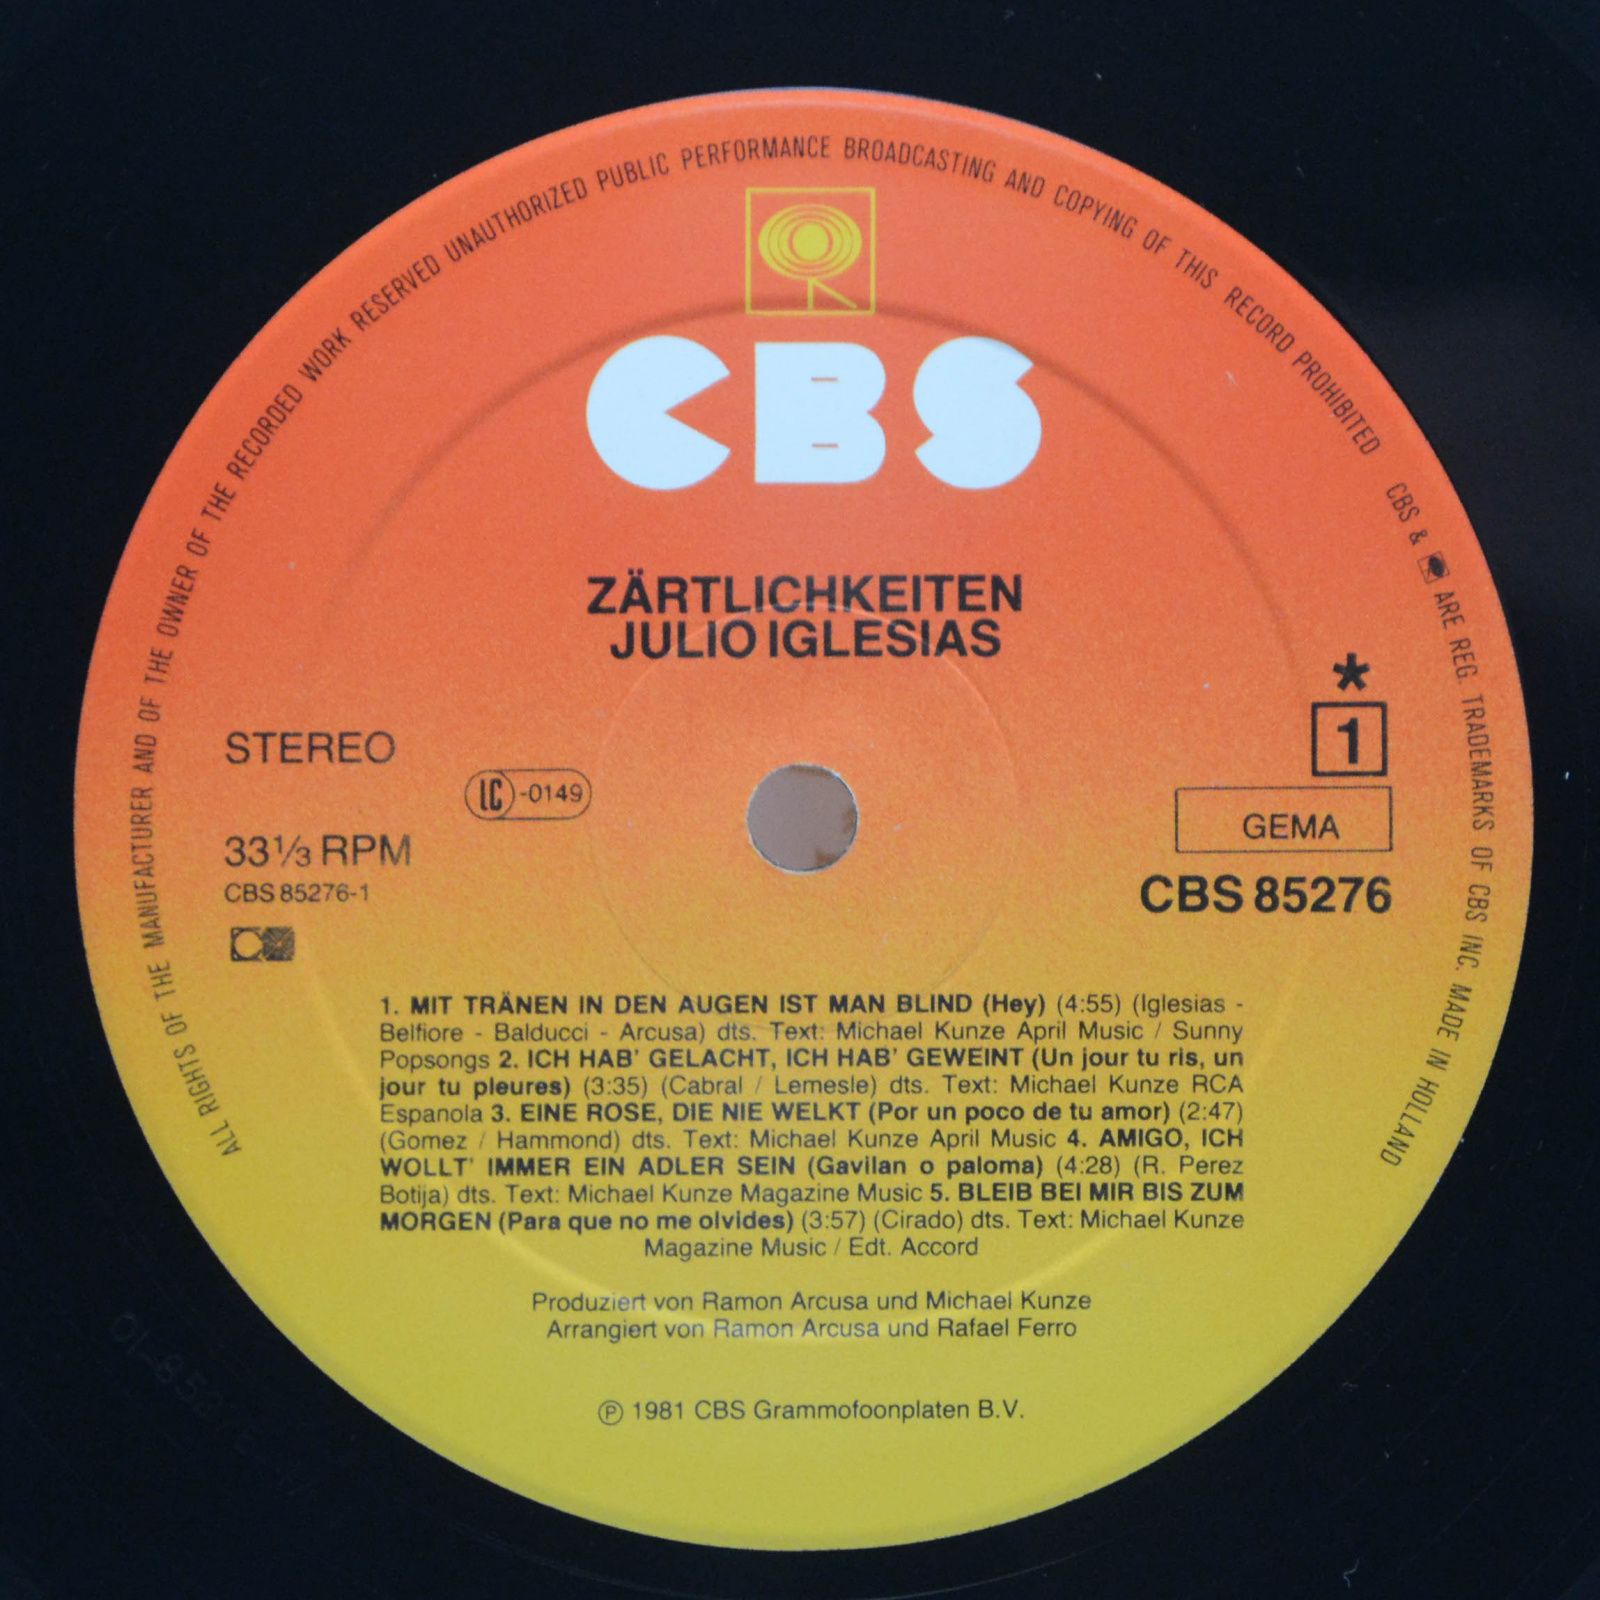 Julio Iglesias — Zärtlichkeiten, 1981